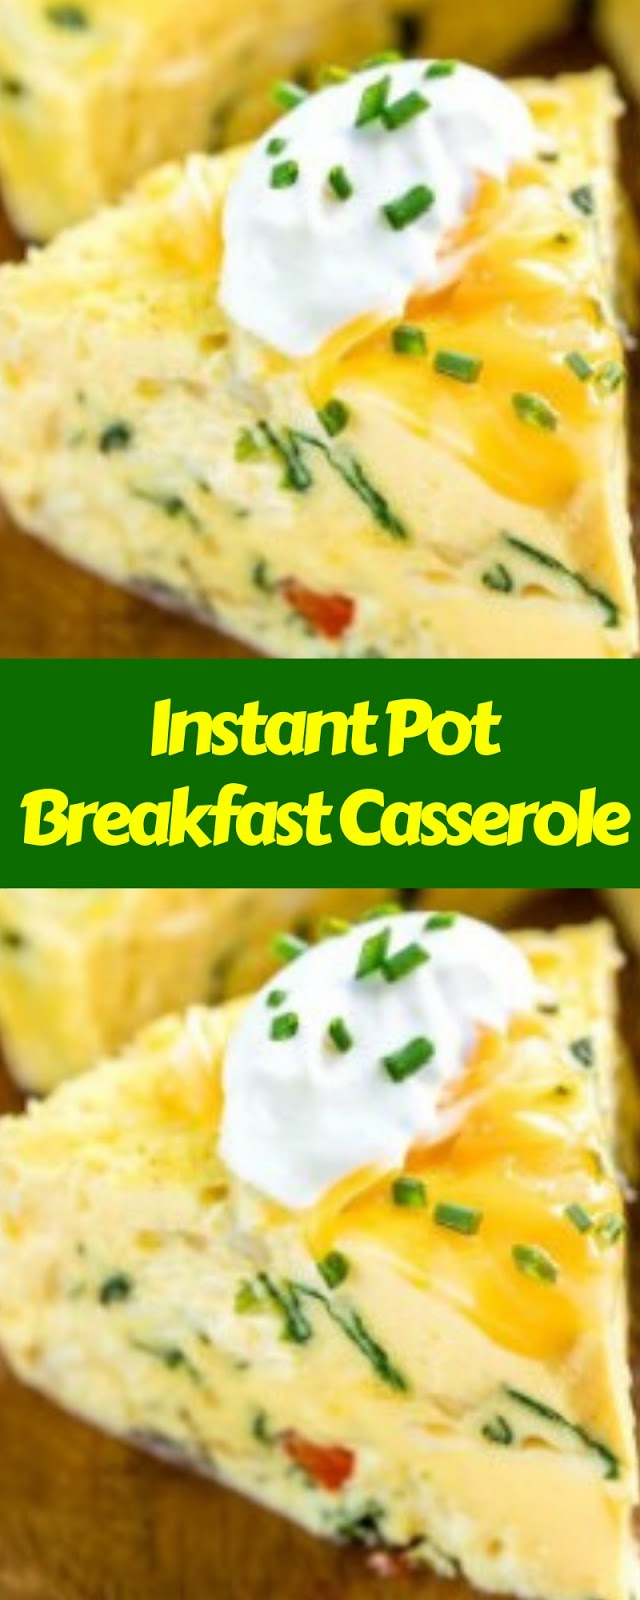 Instant Pot Breakfast Casserole